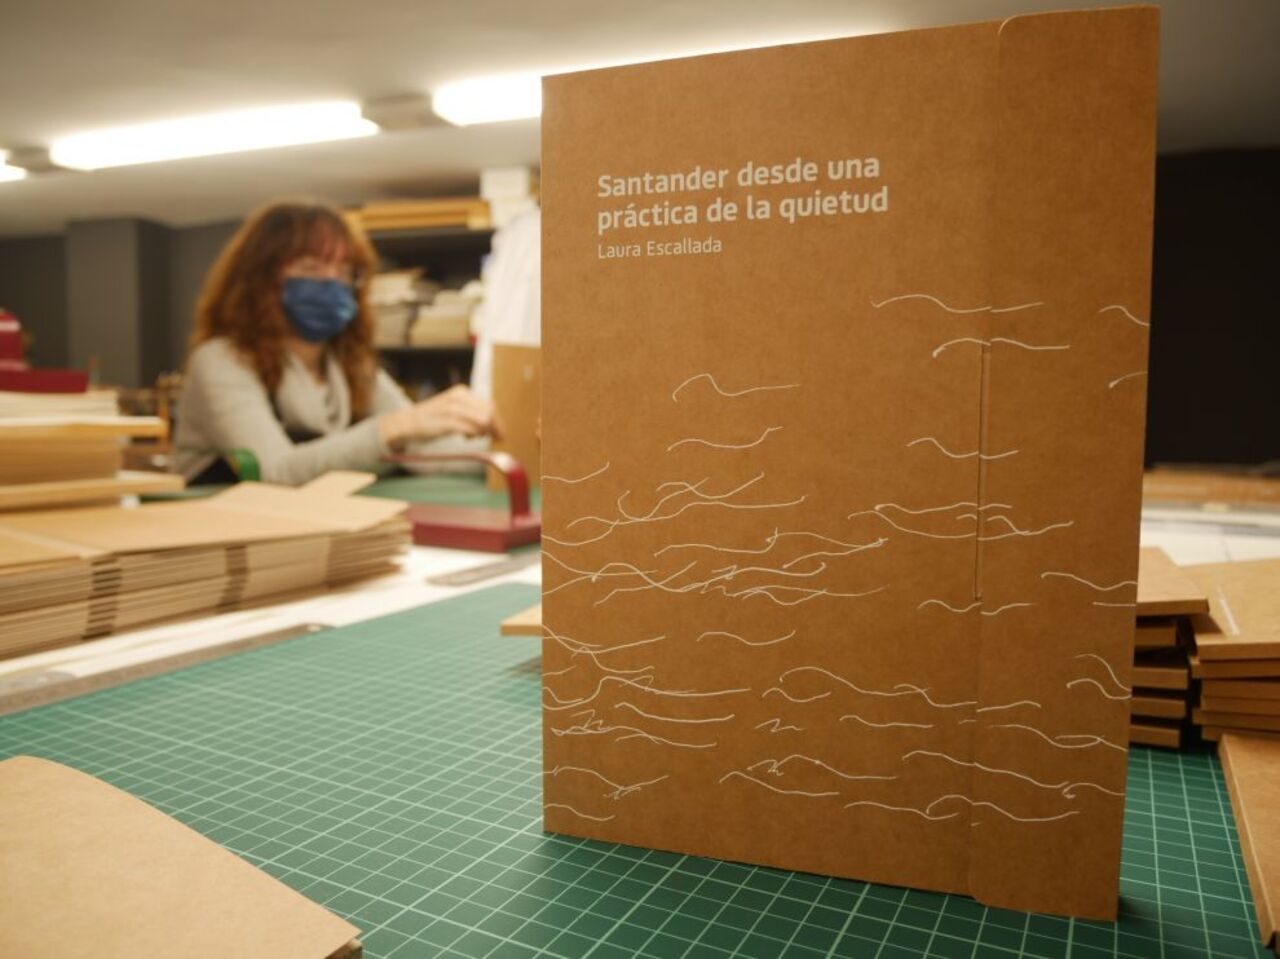 Laura Escallada retrata en un libro de artista el imaginario del mar Cantábrico